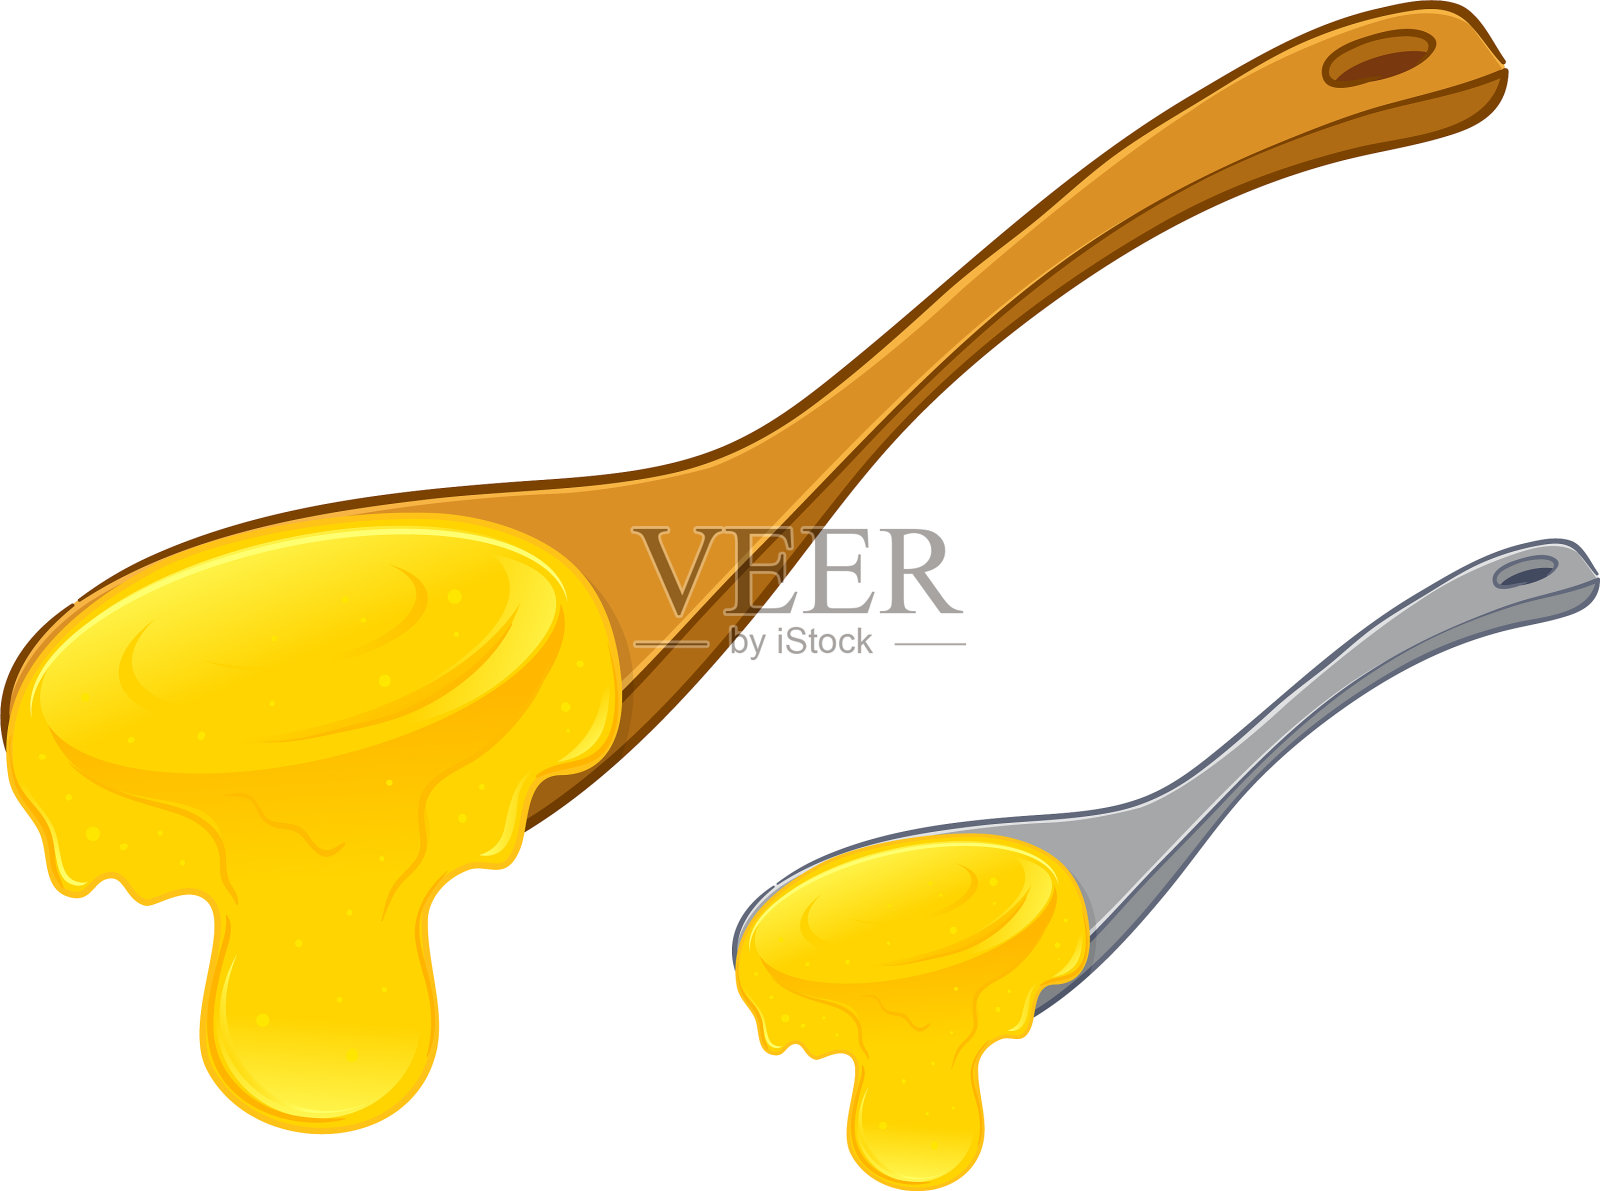 满满一勺金黄色的甜蜂蜜插画图片素材